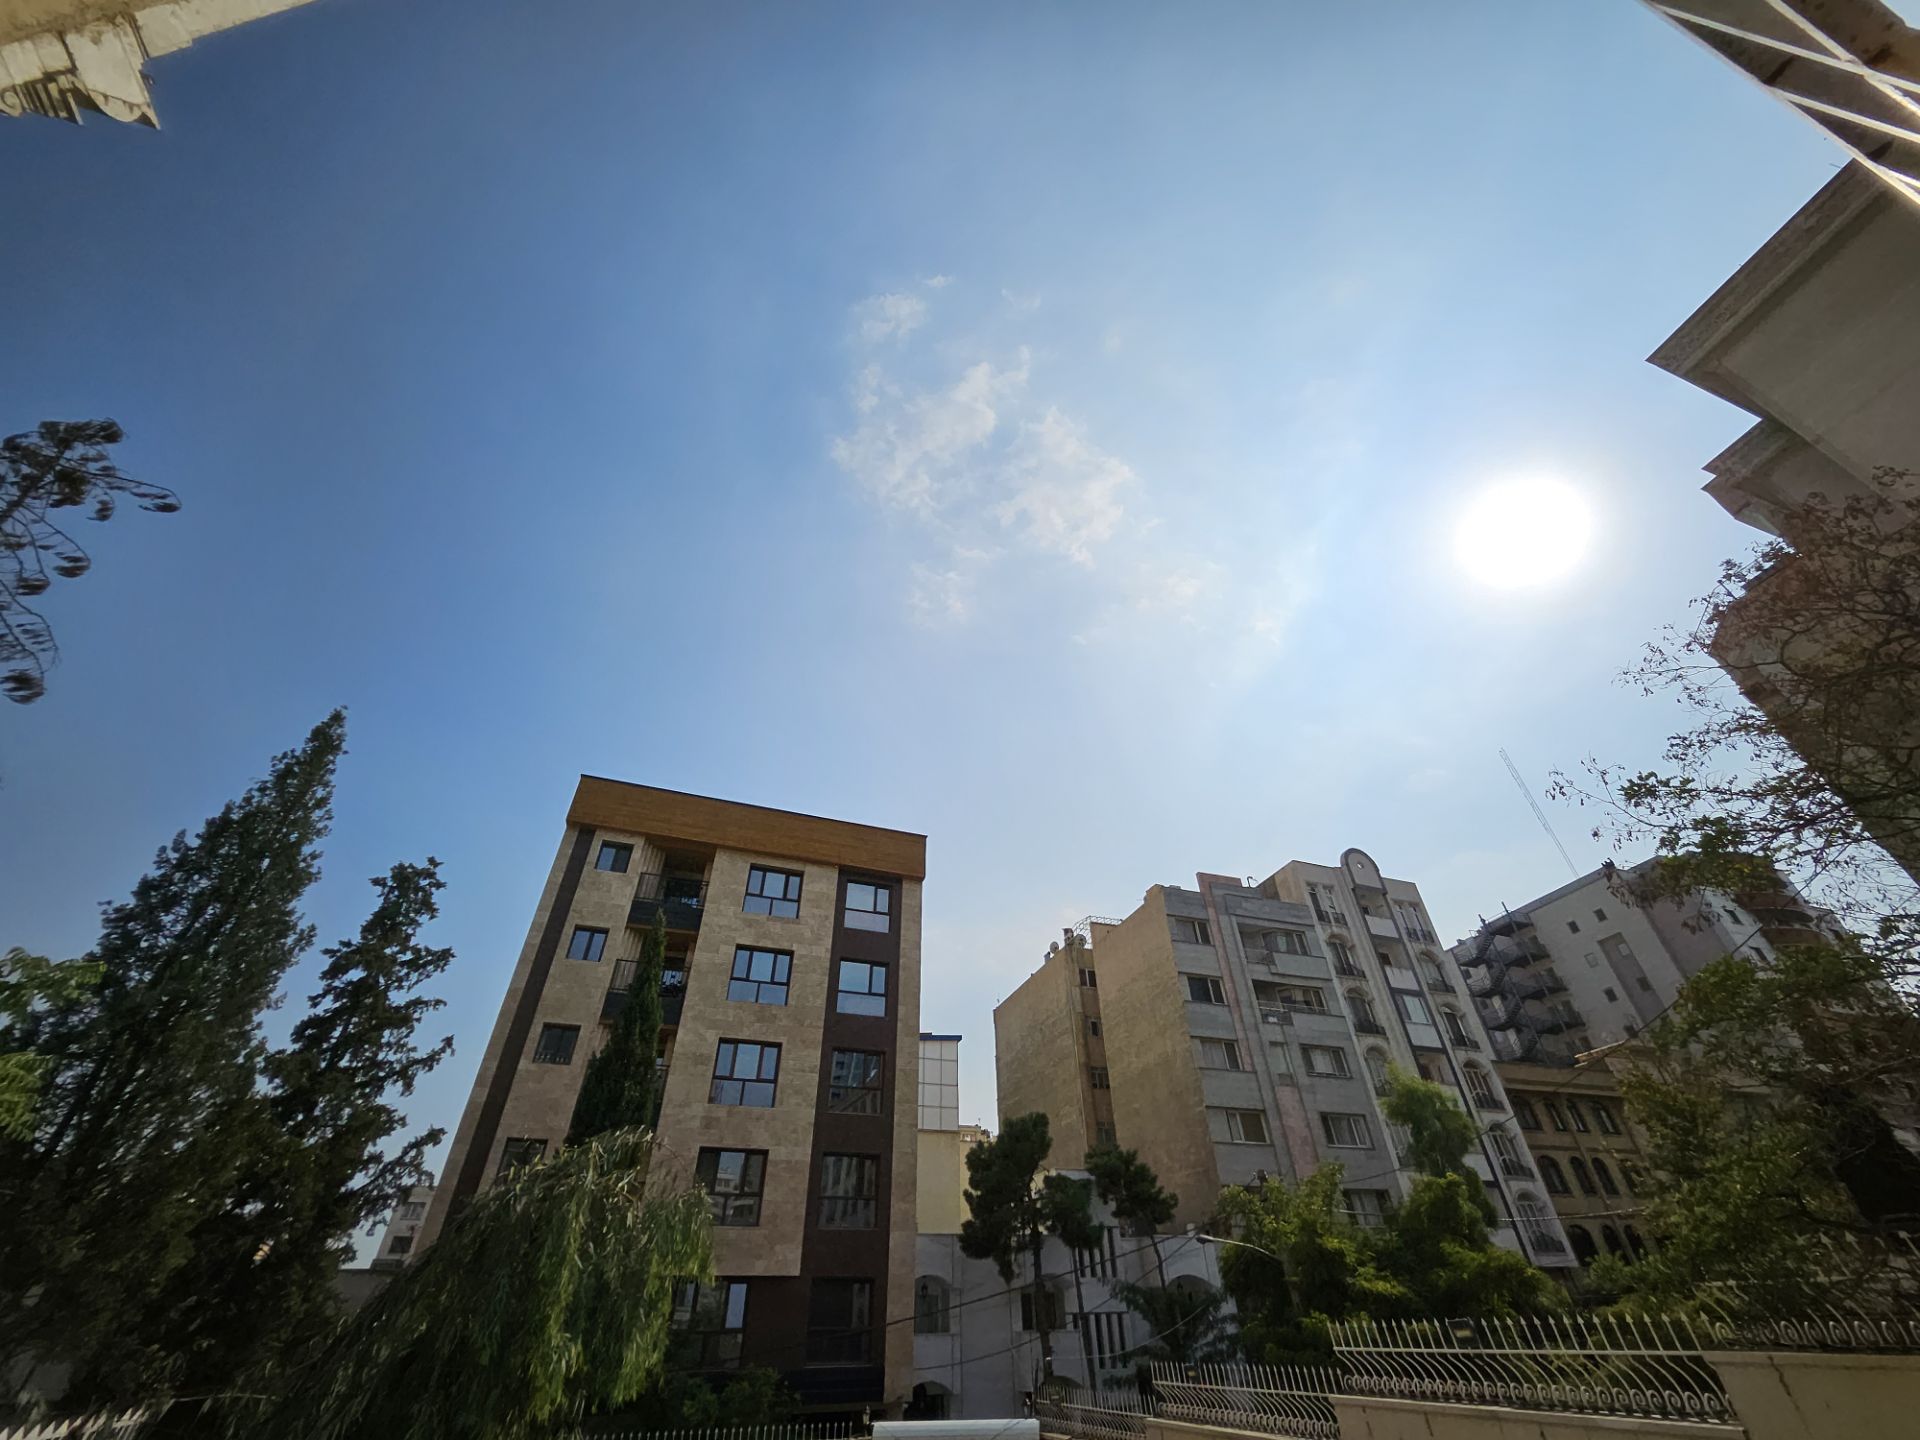 یک روز آفتابی در تهران